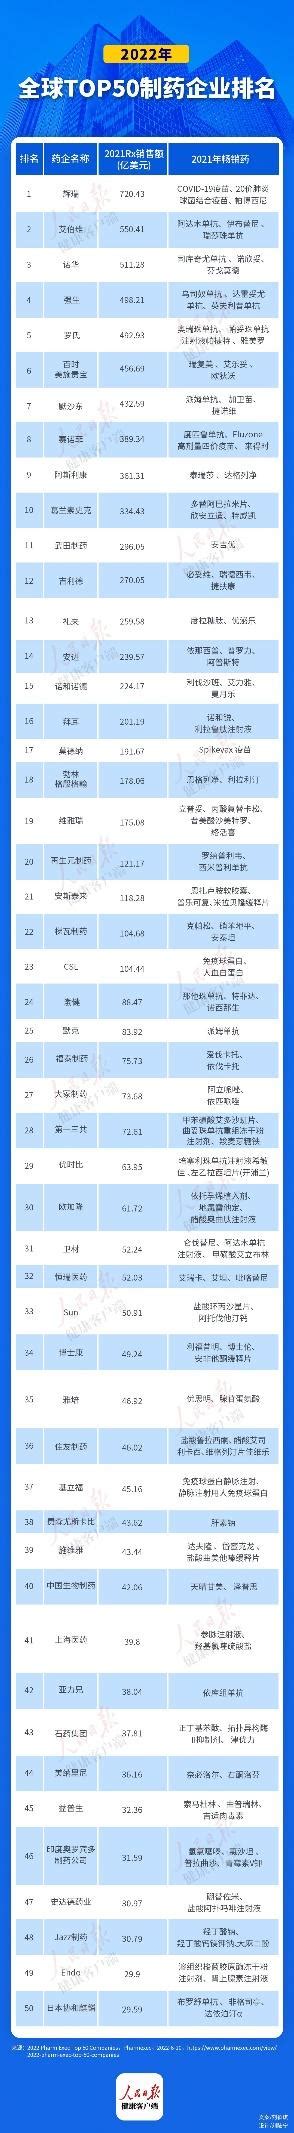 中国有多少家制药企业(2022年中国医药企业10强 ) - 拼客号